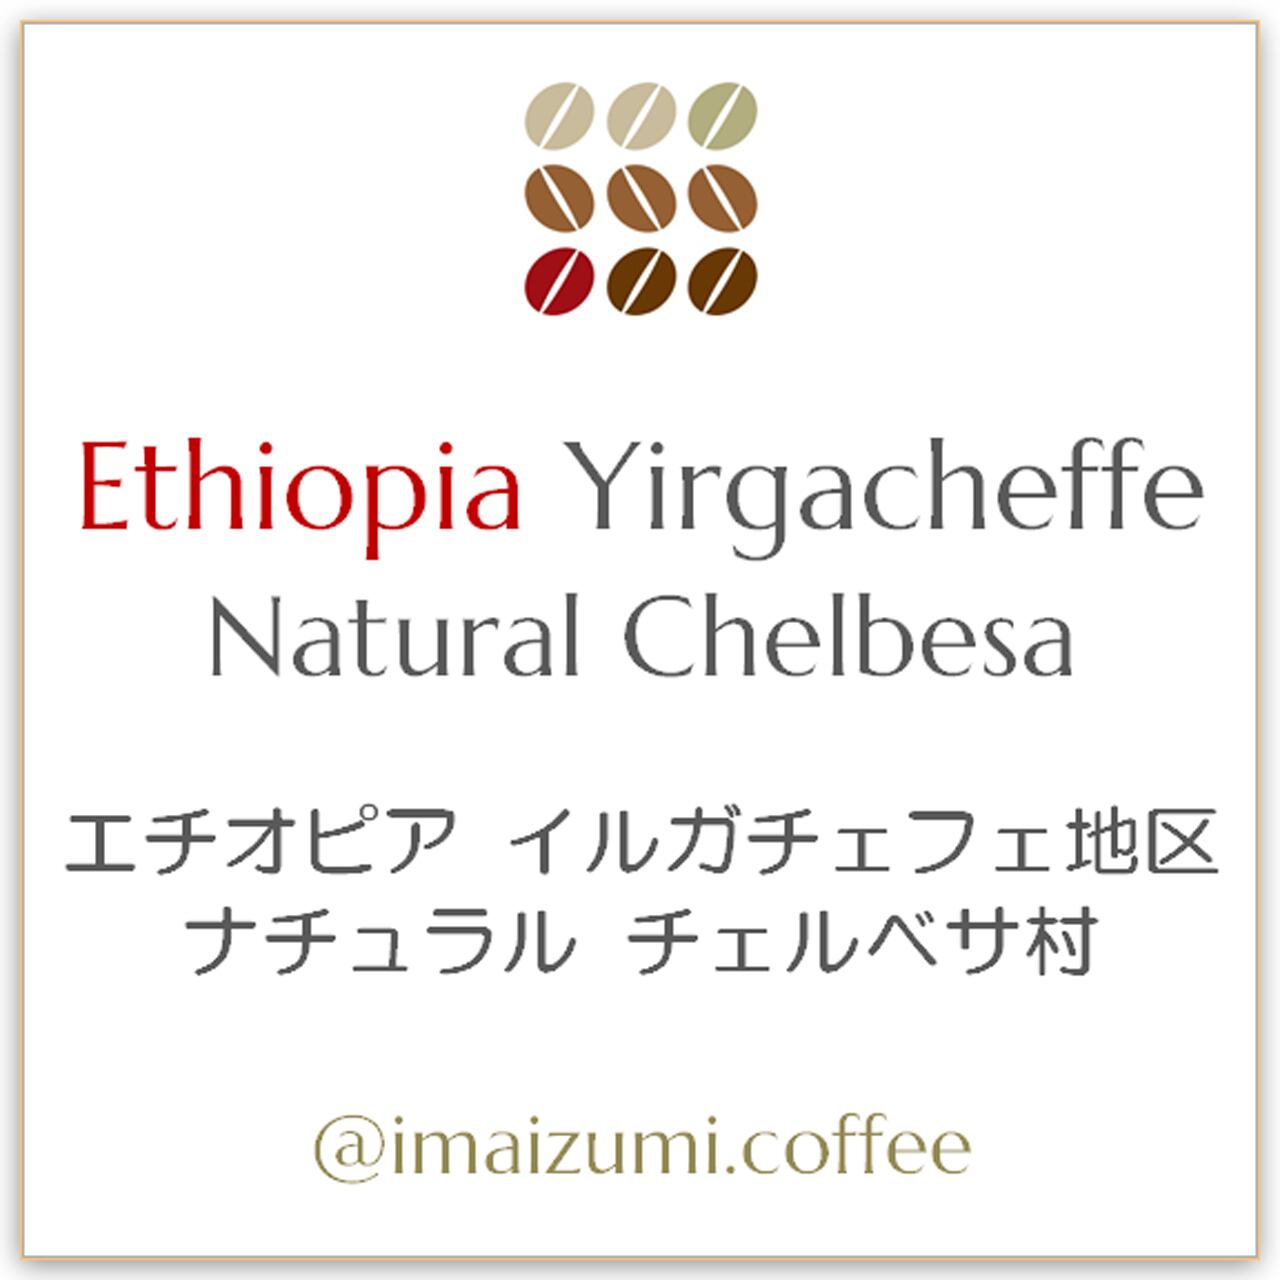 【送料込】エチオピア イルガチェフェ地区 ナチュラル チェルベサ - Ethiopia Yirgacheffe Natural Chelbesa - 300g(100g×3)